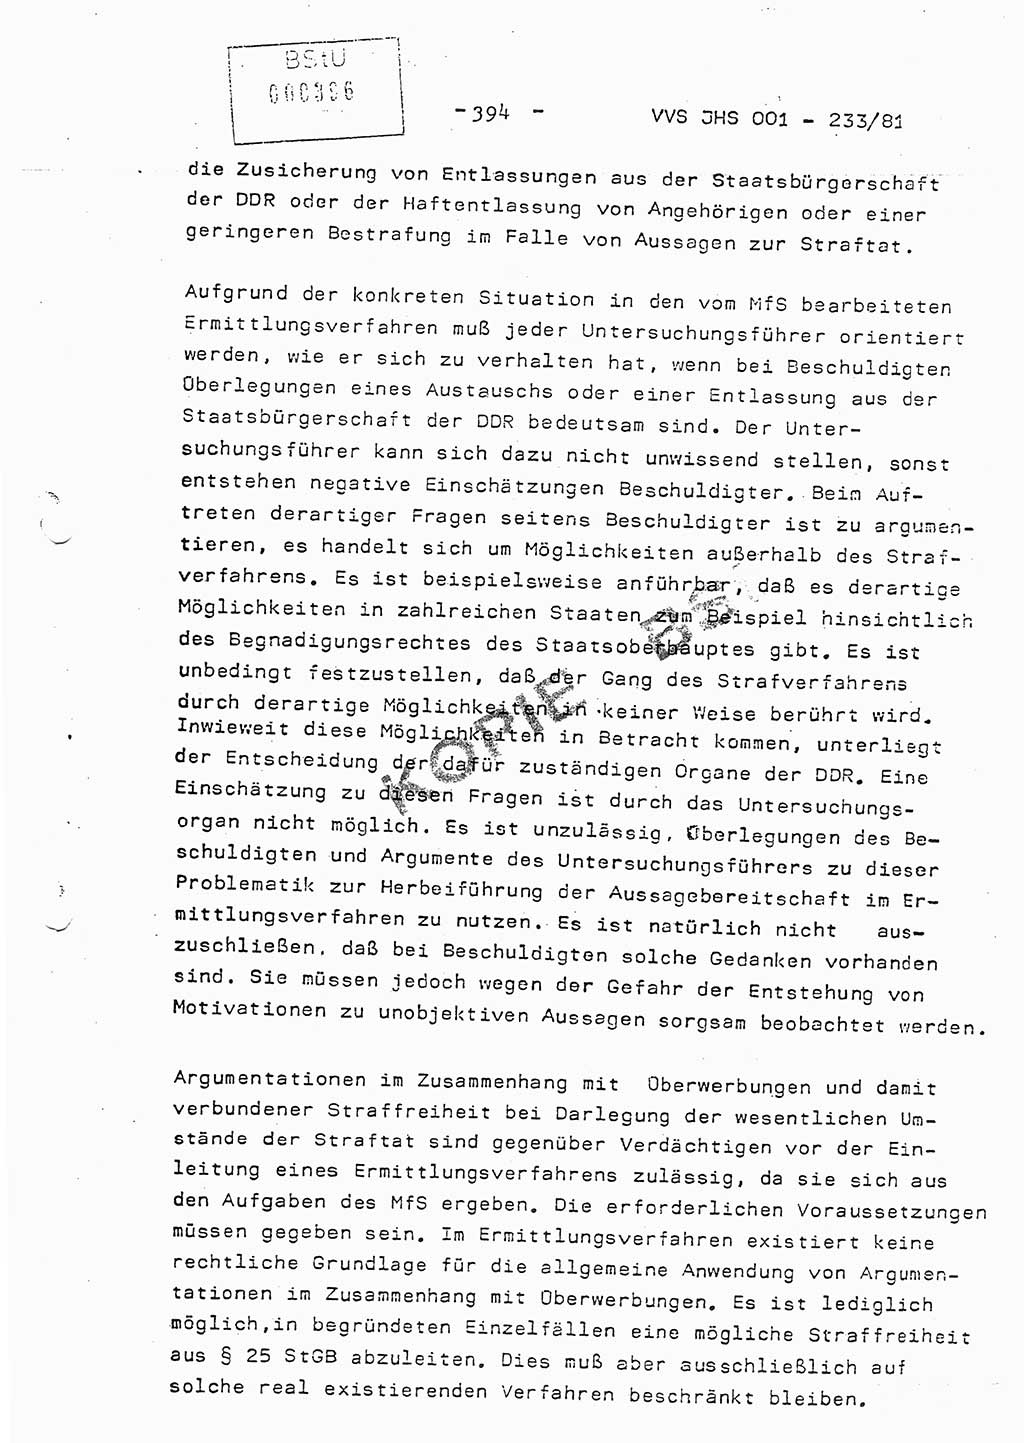 Dissertation Oberstleutnant Horst Zank (JHS), Oberstleutnant Dr. Karl-Heinz Knoblauch (JHS), Oberstleutnant Gustav-Adolf Kowalewski (HA Ⅸ), Oberstleutnant Wolfgang Plötner (HA Ⅸ), Ministerium für Staatssicherheit (MfS) [Deutsche Demokratische Republik (DDR)], Juristische Hochschule (JHS), Vertrauliche Verschlußsache (VVS) o001-233/81, Potsdam 1981, Blatt 394 (Diss. MfS DDR JHS VVS o001-233/81 1981, Bl. 394)